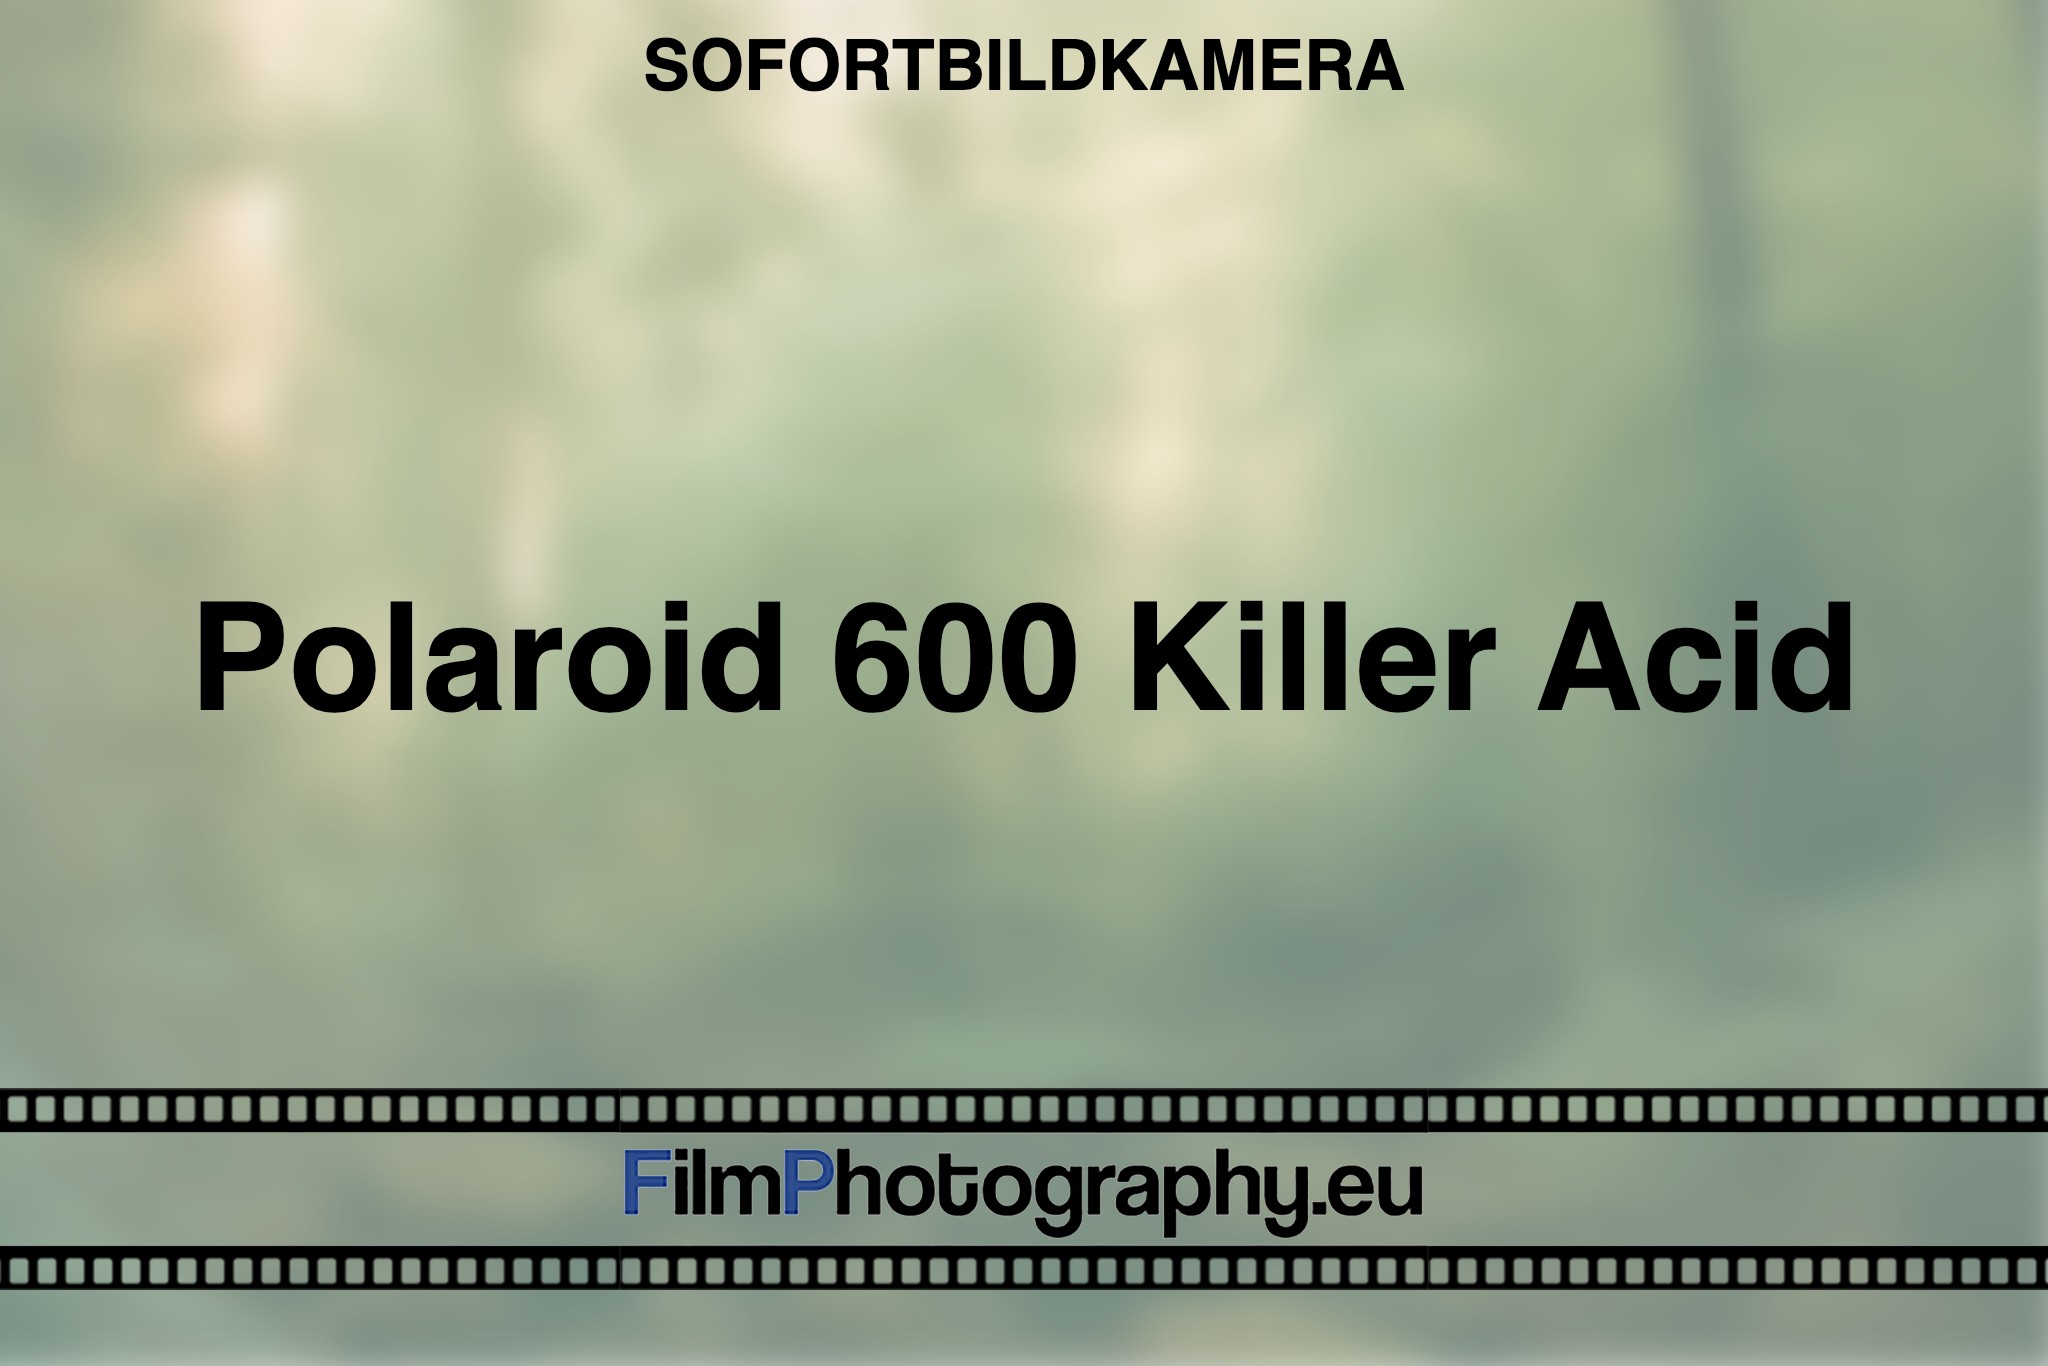 polaroid-600-killer-acid-sofortbildkamera-bnv